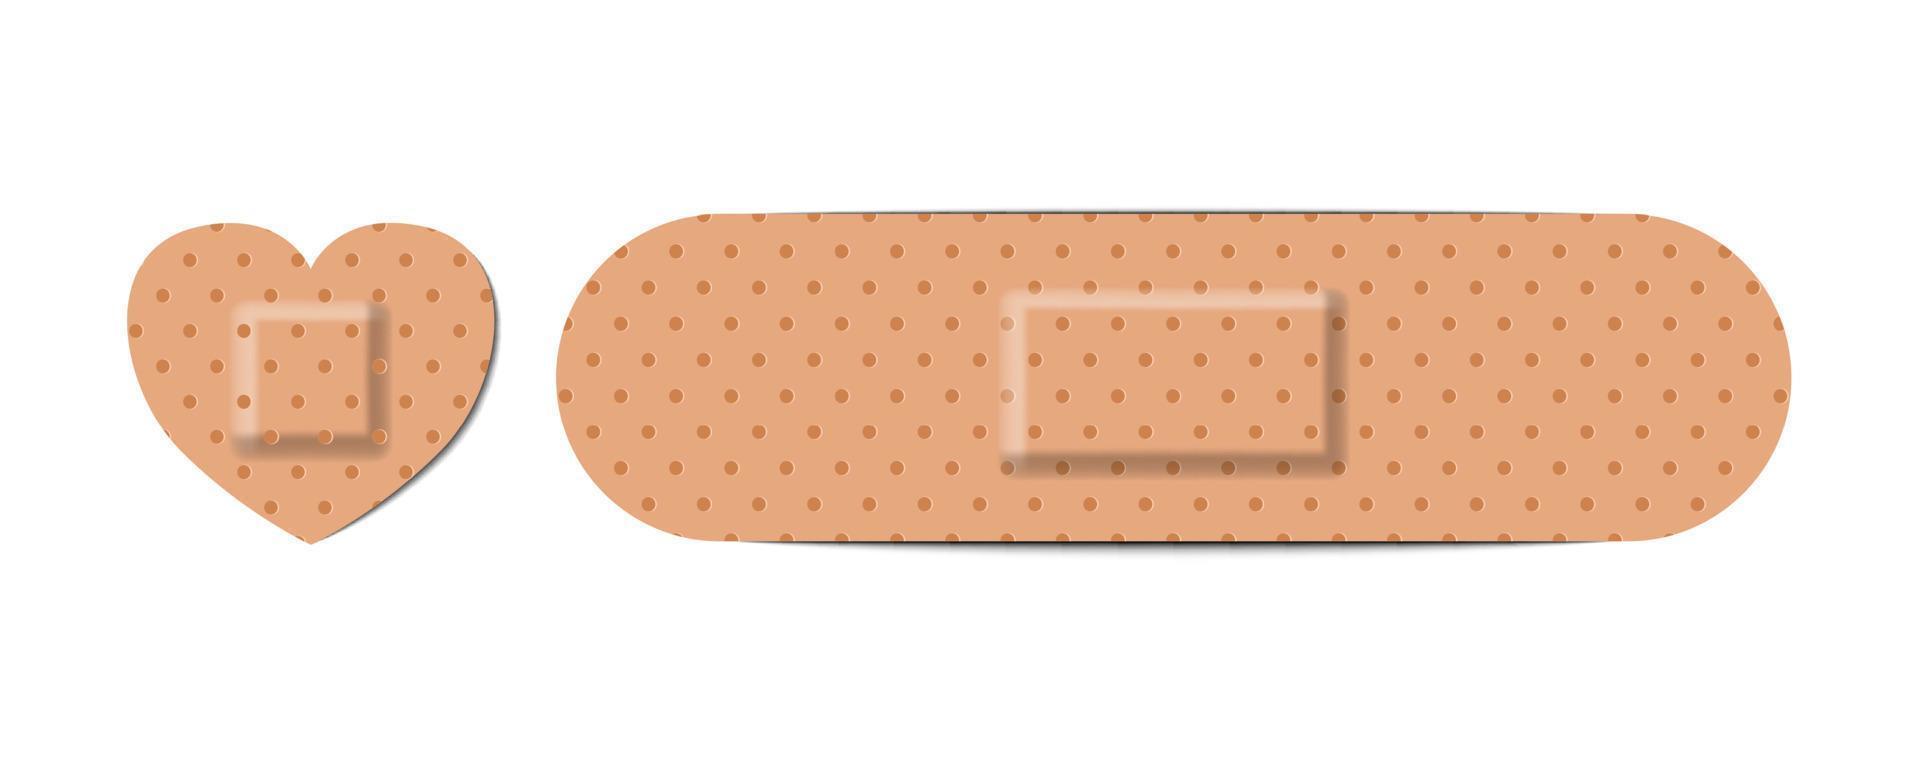 självhäftande bandage elastiska medicinska plåster, vektorillustration vektor